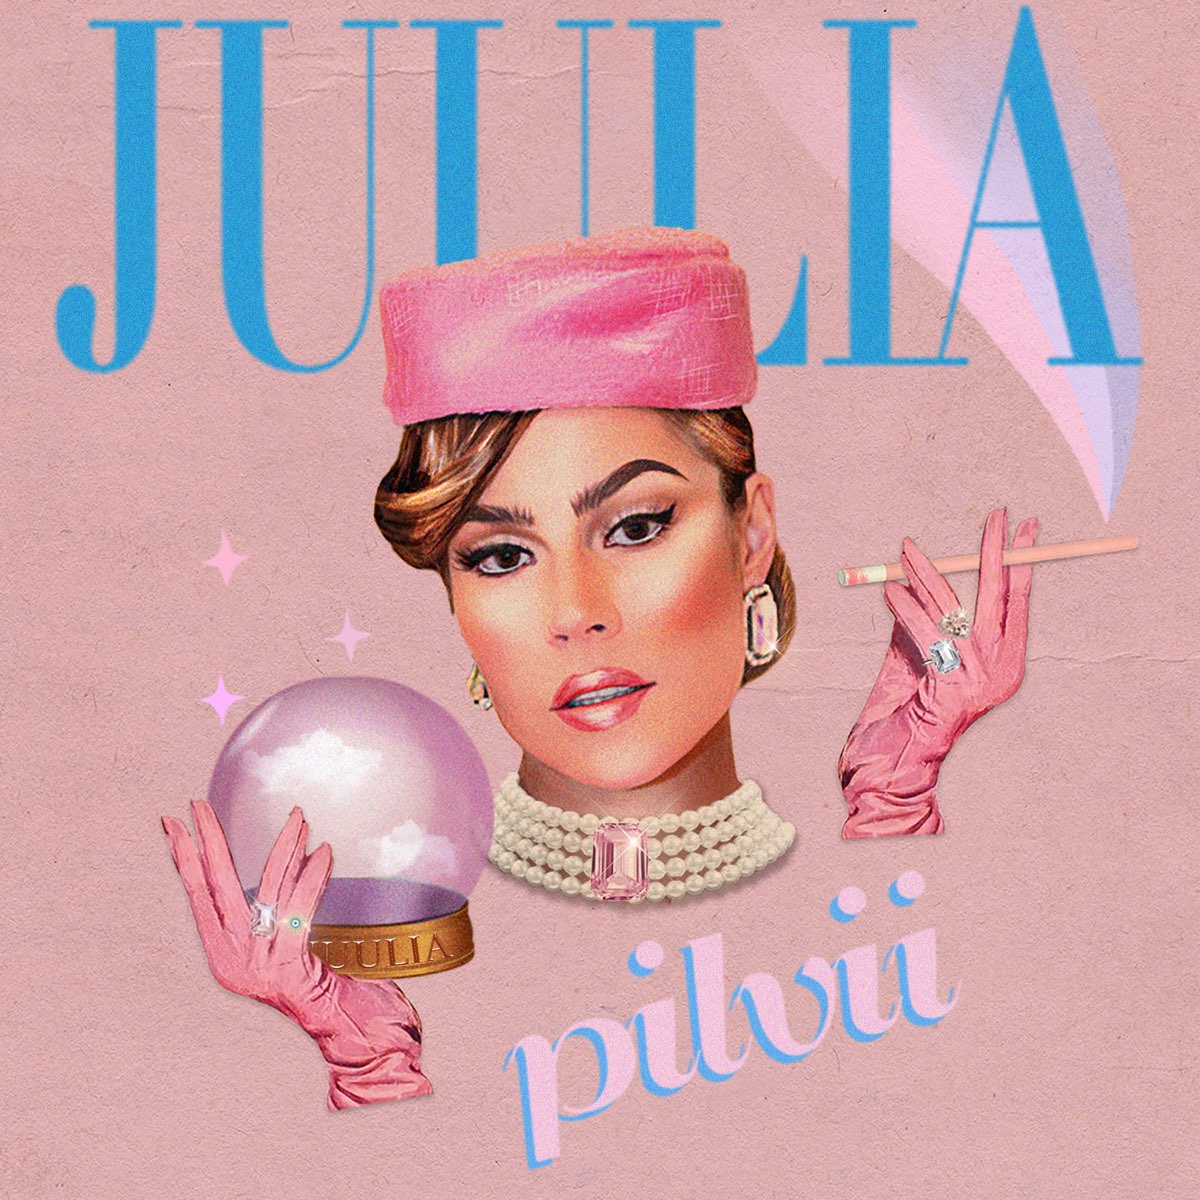 Pilvii - Single by Juulia on Apple Music